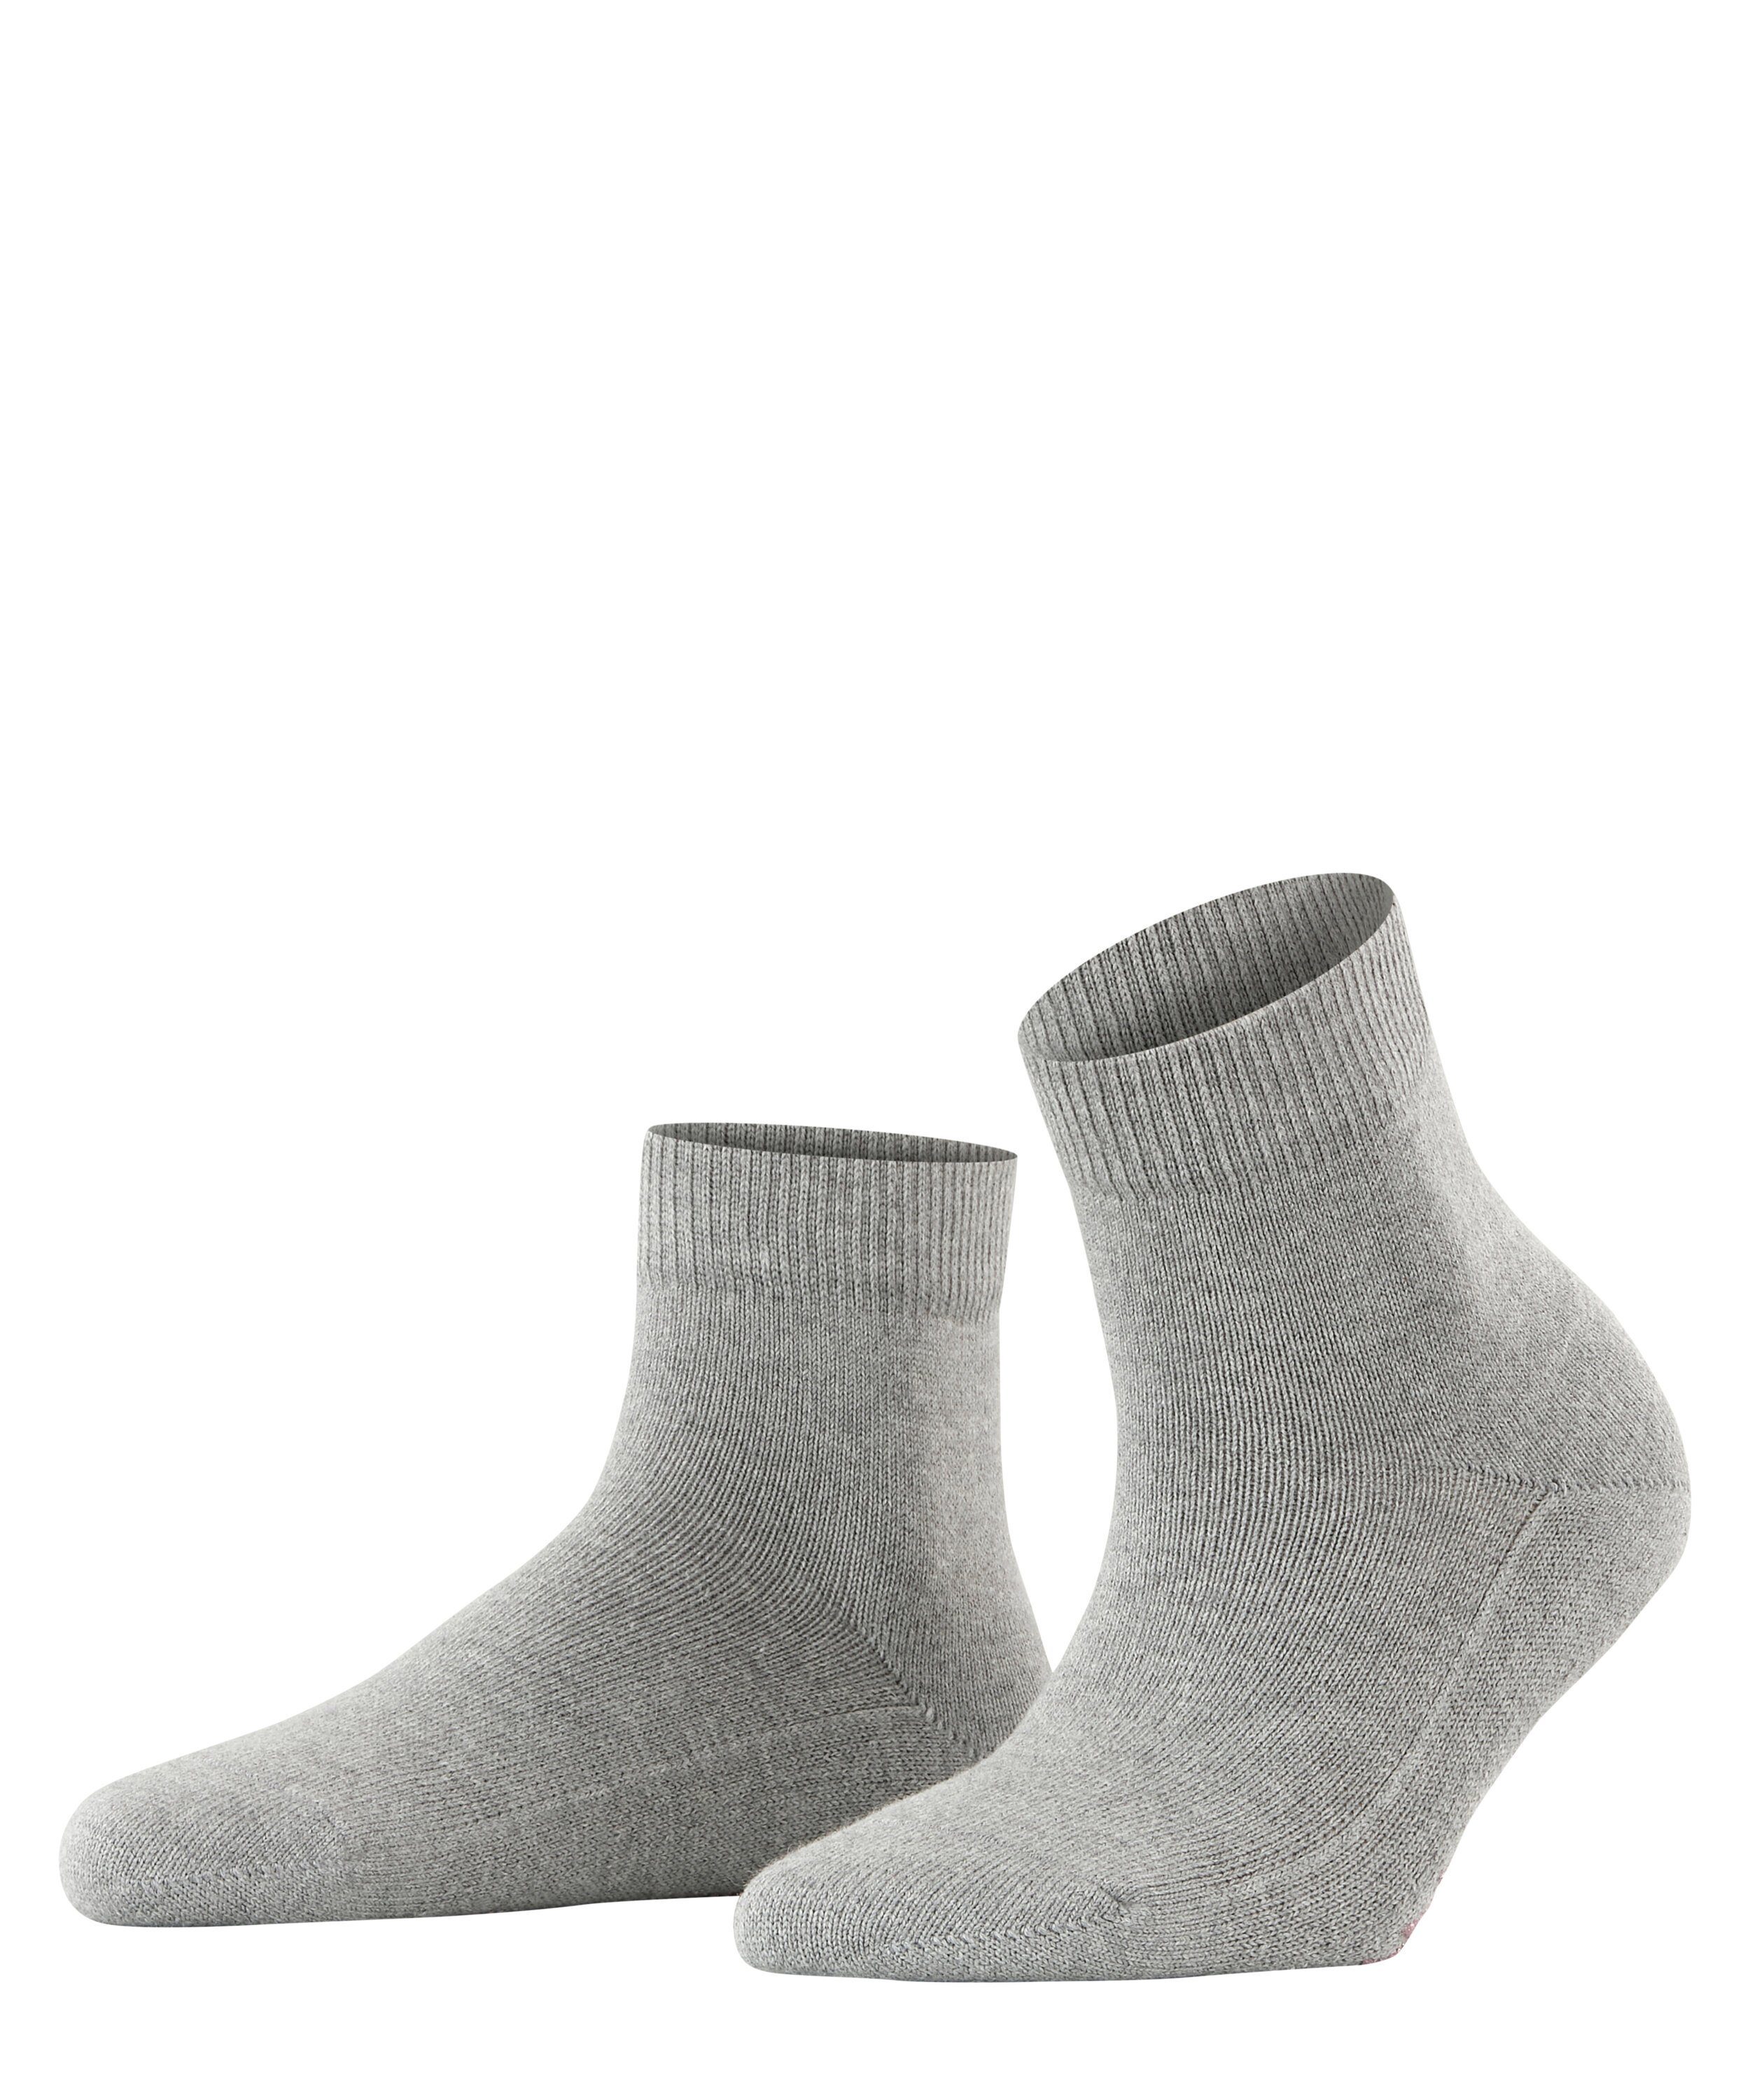 mel (1-Paar) Cuddle Socken (3530) m.grey FALKE Light Pads